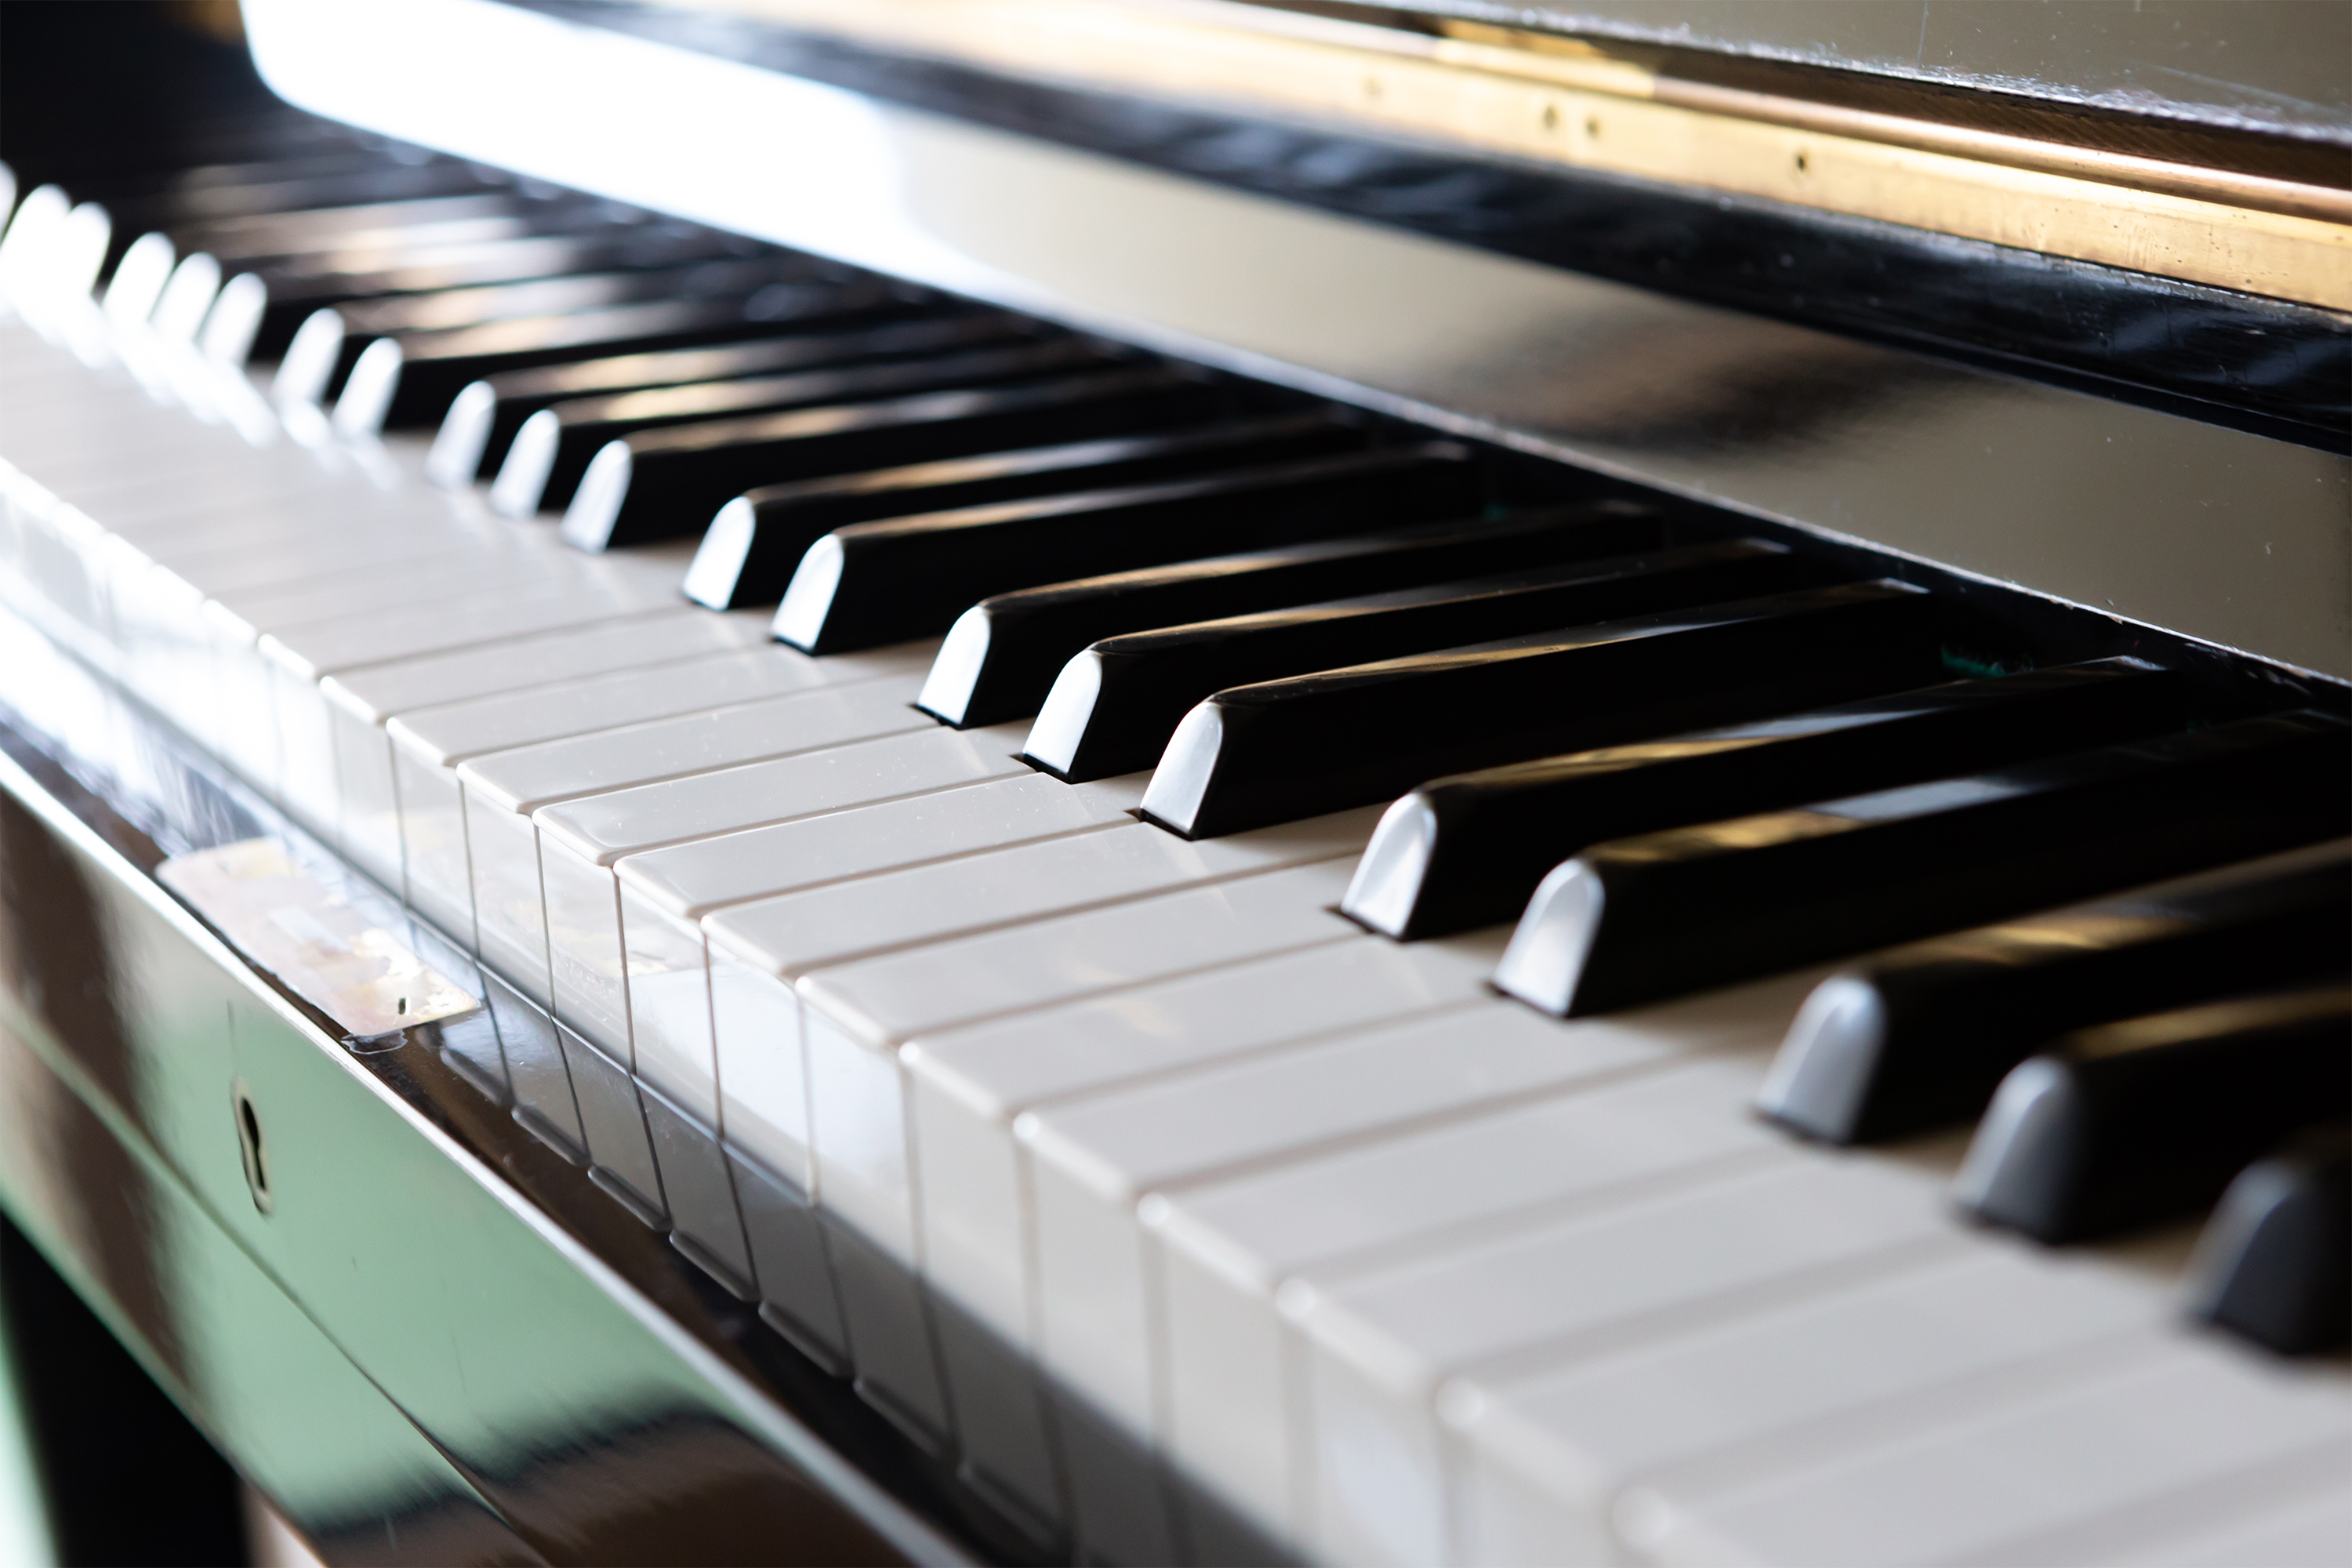 ピアノの鍵盤 無料の高画質フリー写真素材 イメージズラボ